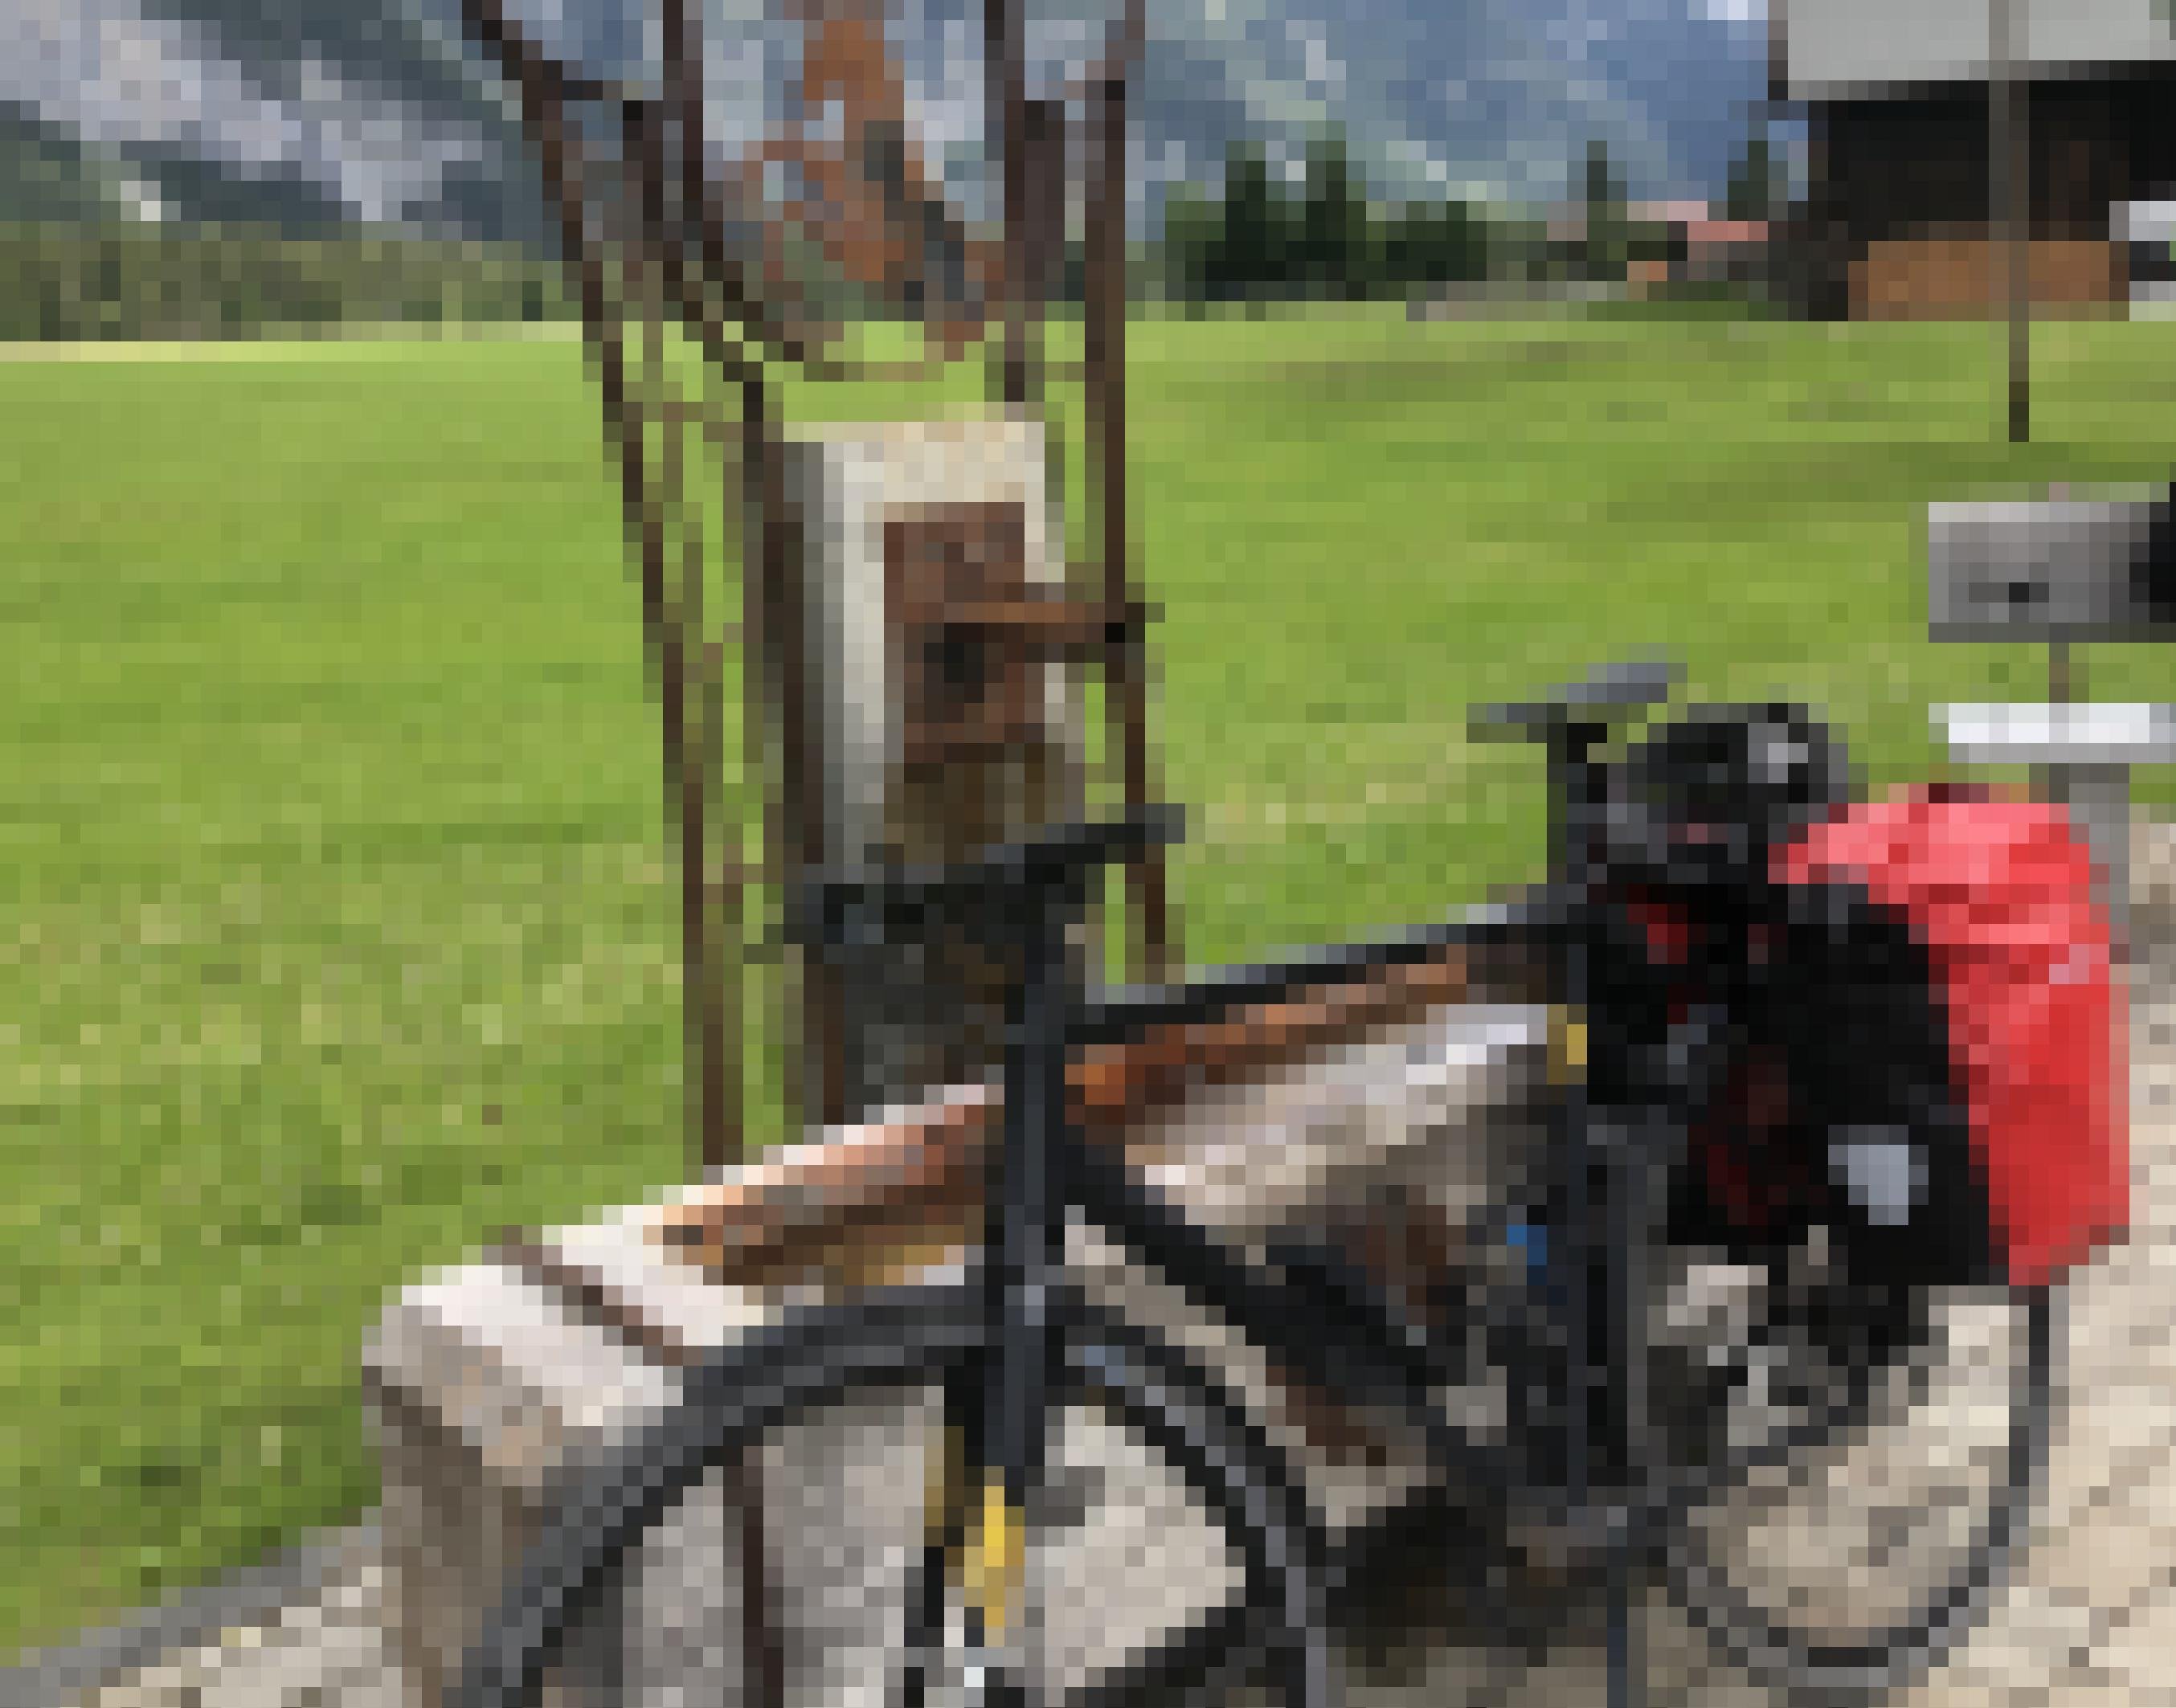 Dargestellt ist ein offener Brunnen in Tirol, aus dem Wasser fließt. Am Brunnen lehnt ein Fahrrad mit Gepäck.